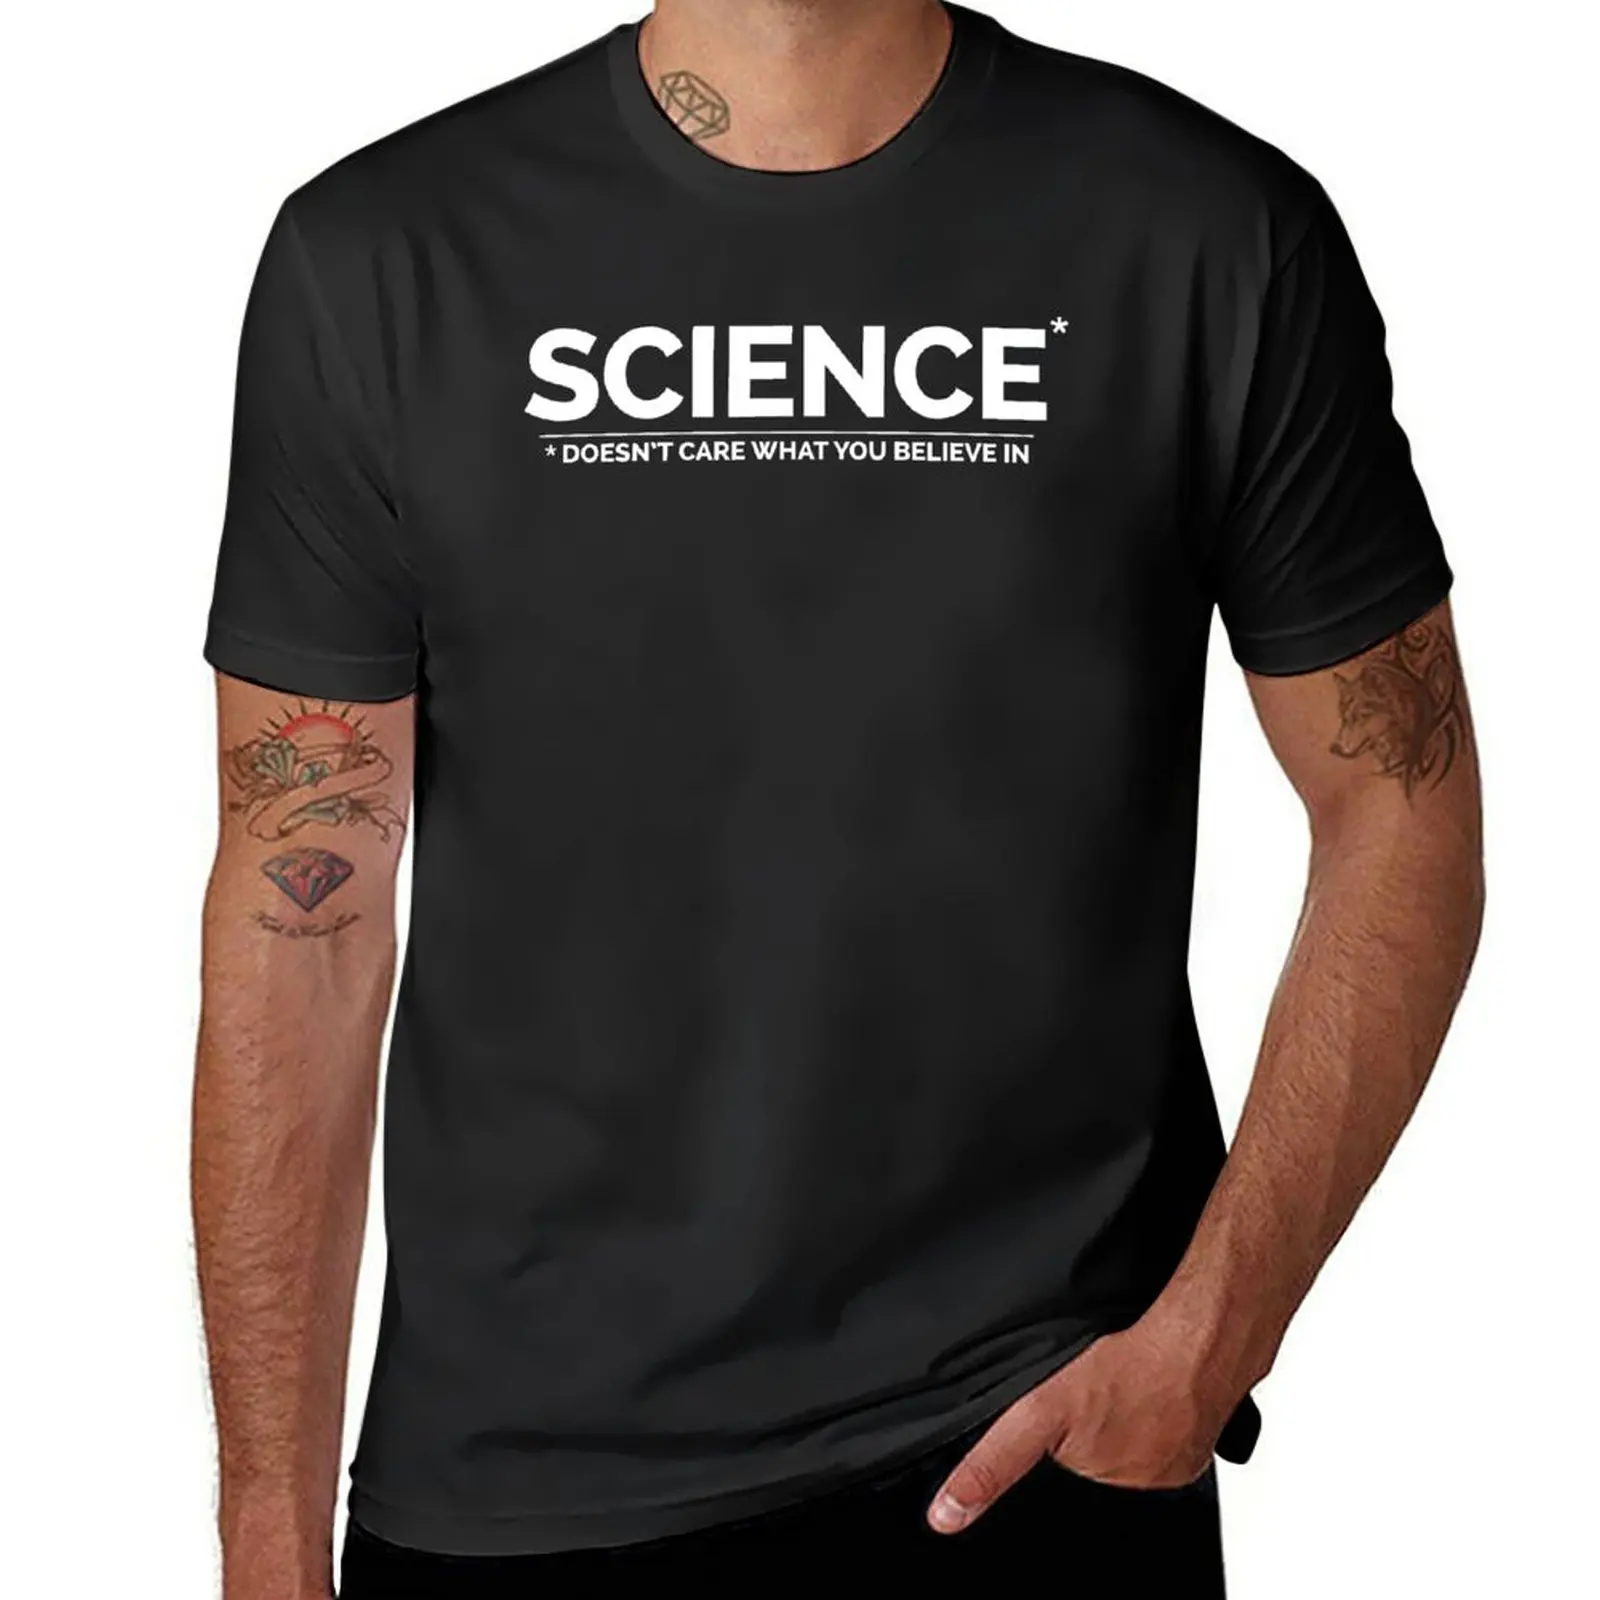 

Мужские футболки с рисунком наука не заботится о том, в чем вы верите, быстросохнущие футболки